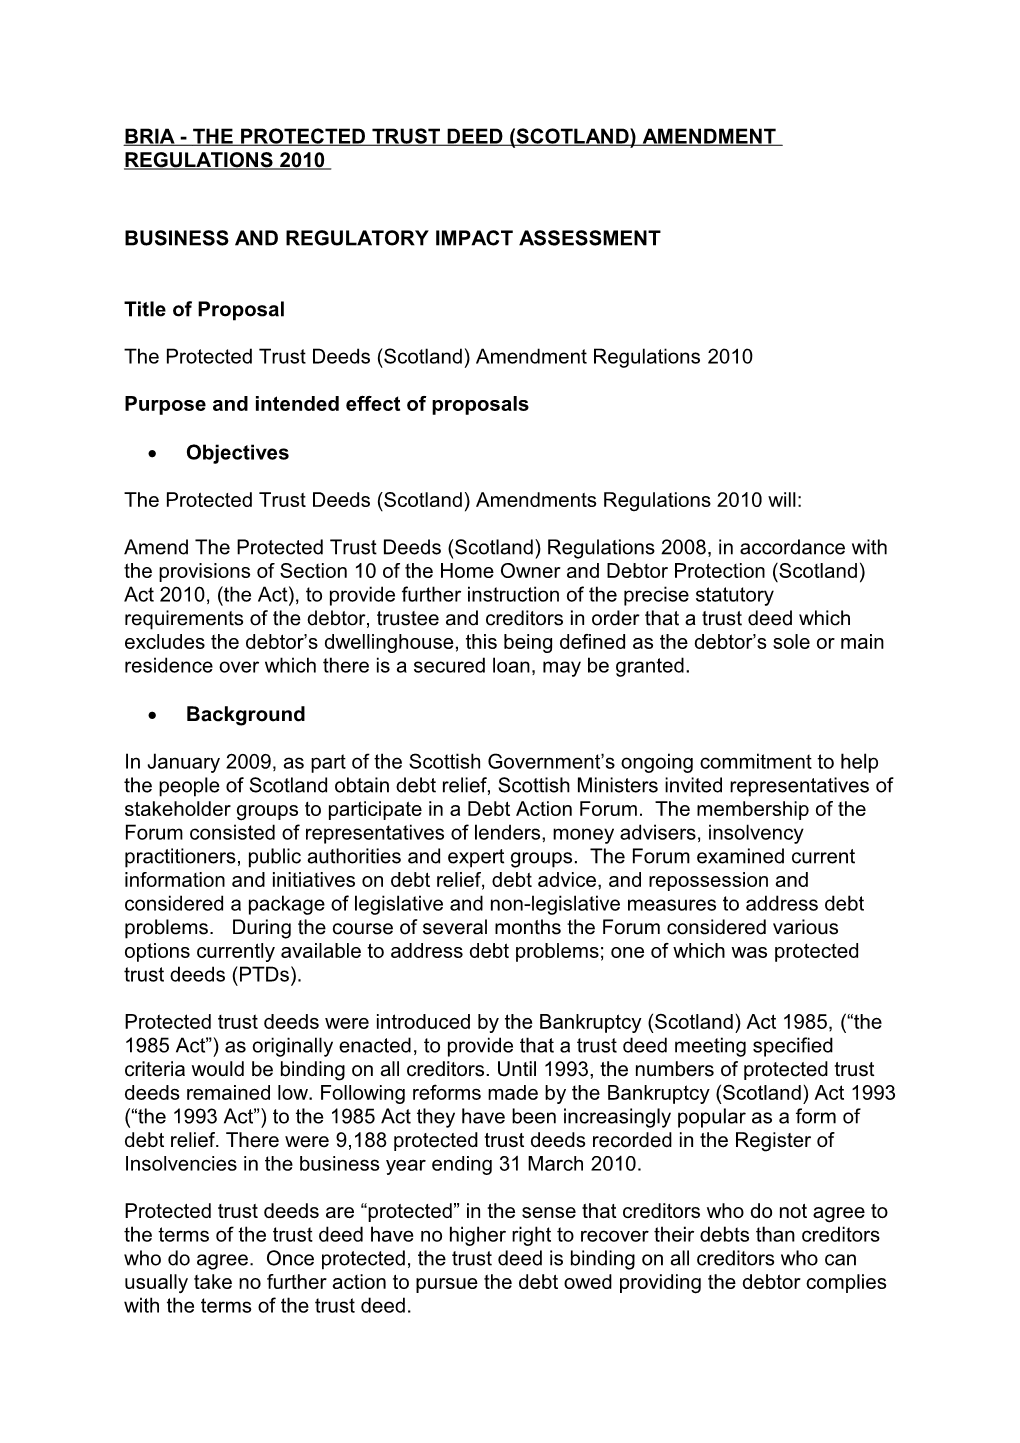 Bria - the Protected Trust Deed (Scotland) Amendment Regulations 2010